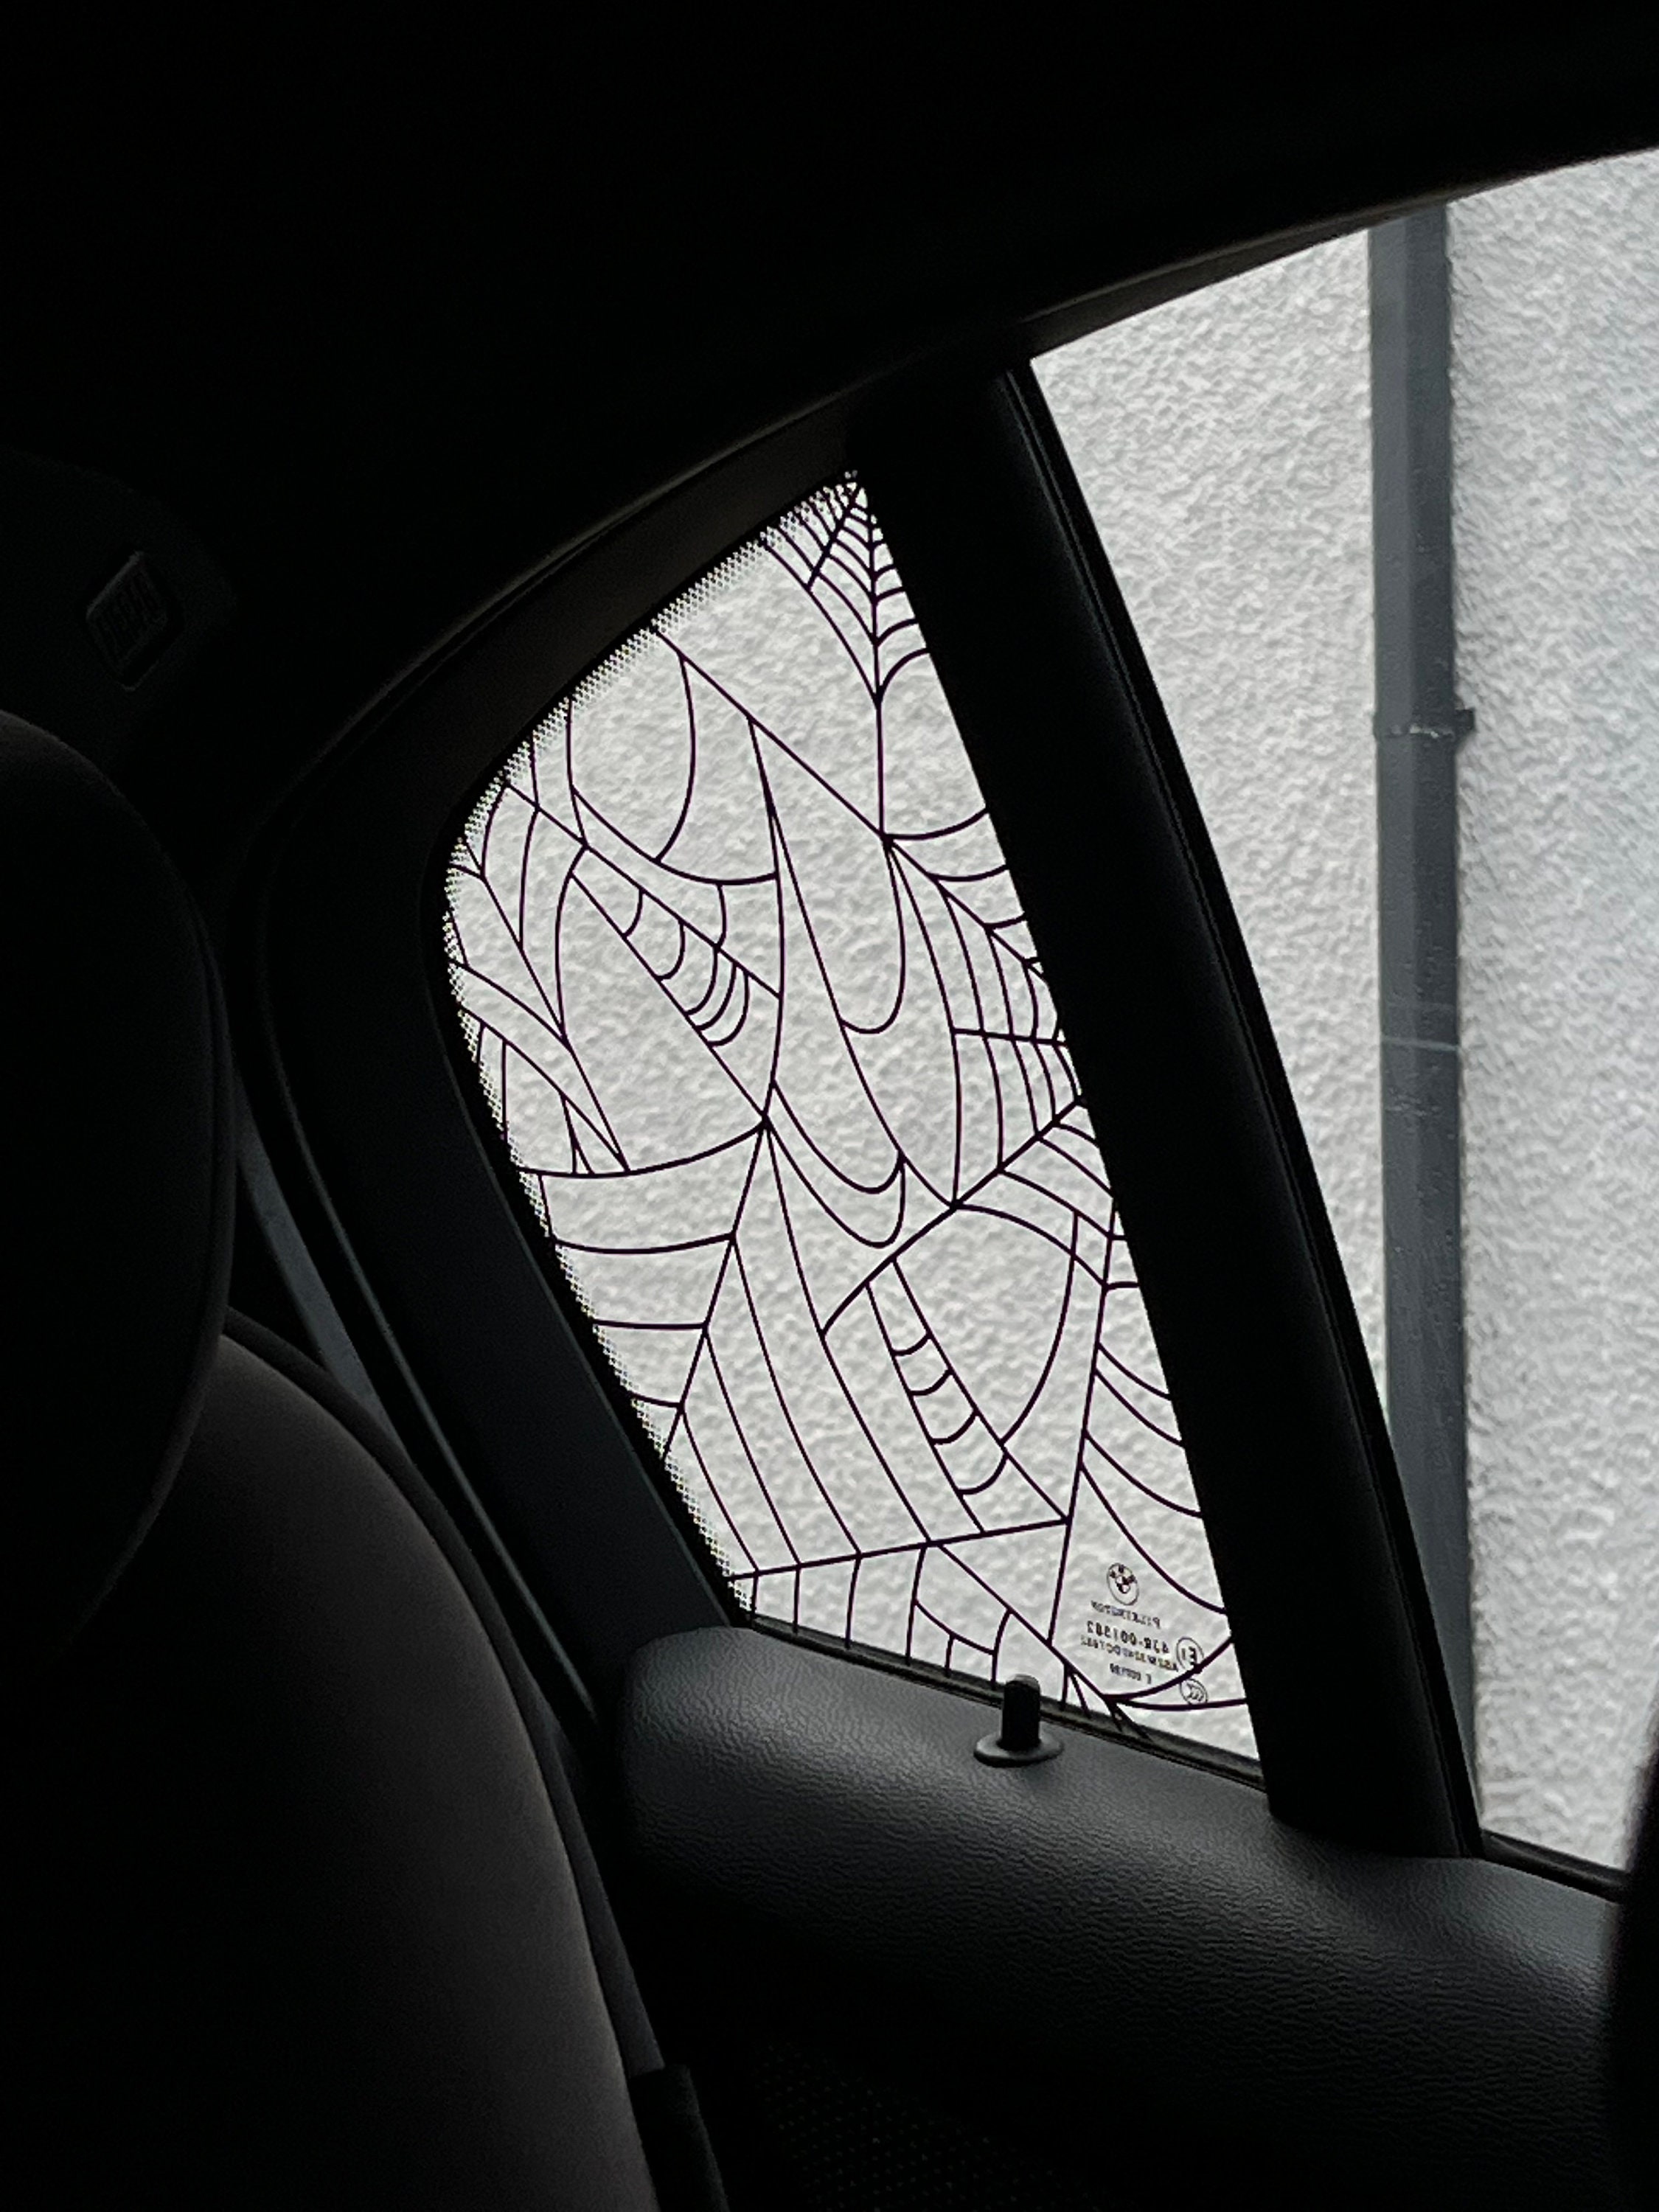 Aufkleber Auto Styling Horror Geist Gesicht Auto Hinten Fenster